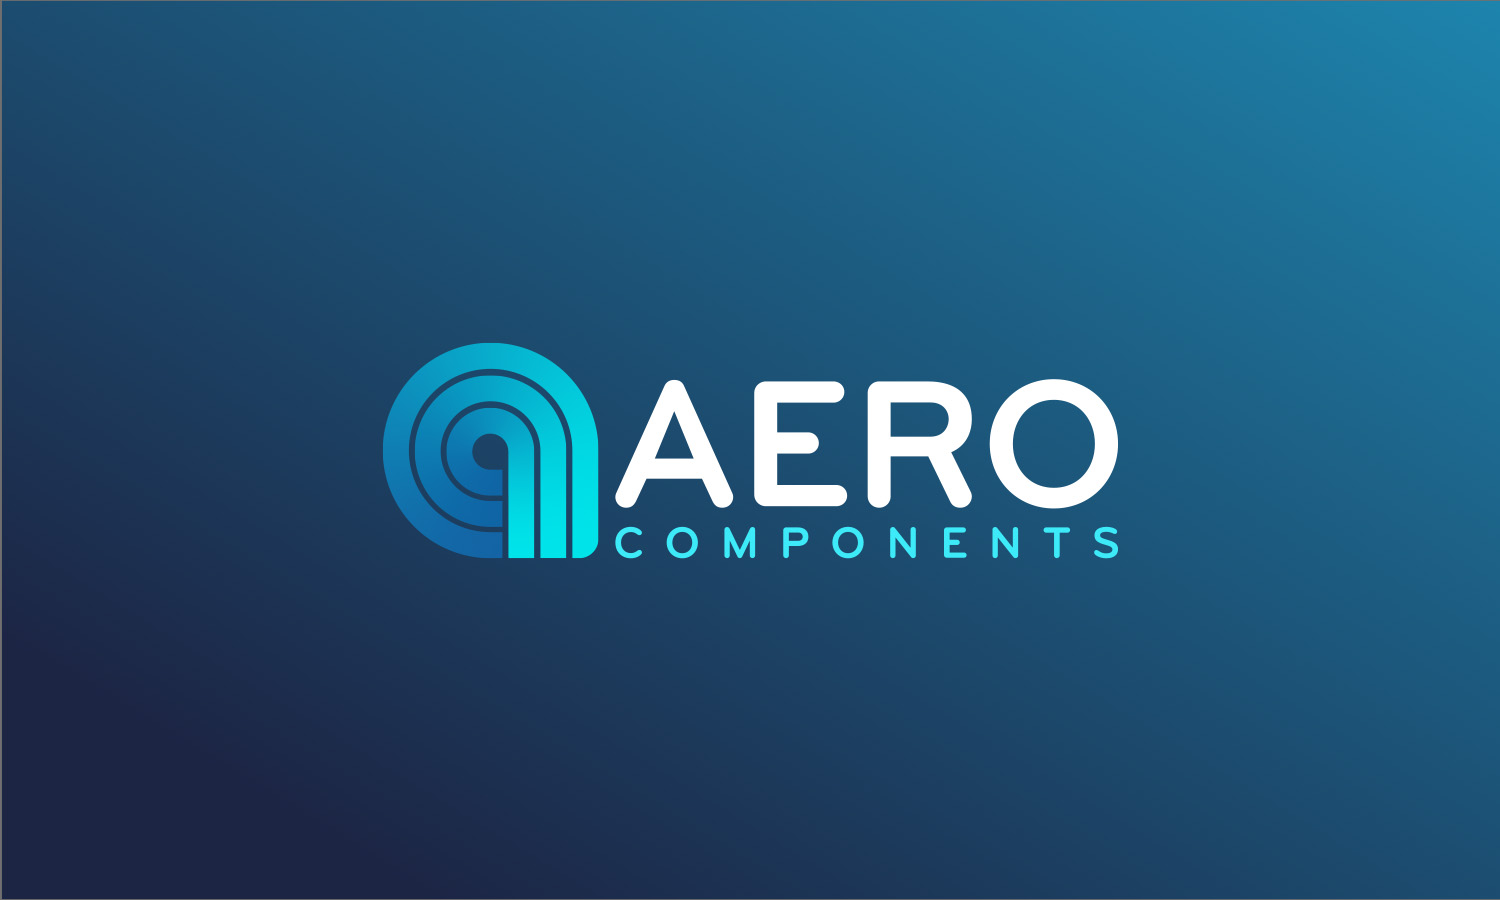 Aerocomponents has rebranded!